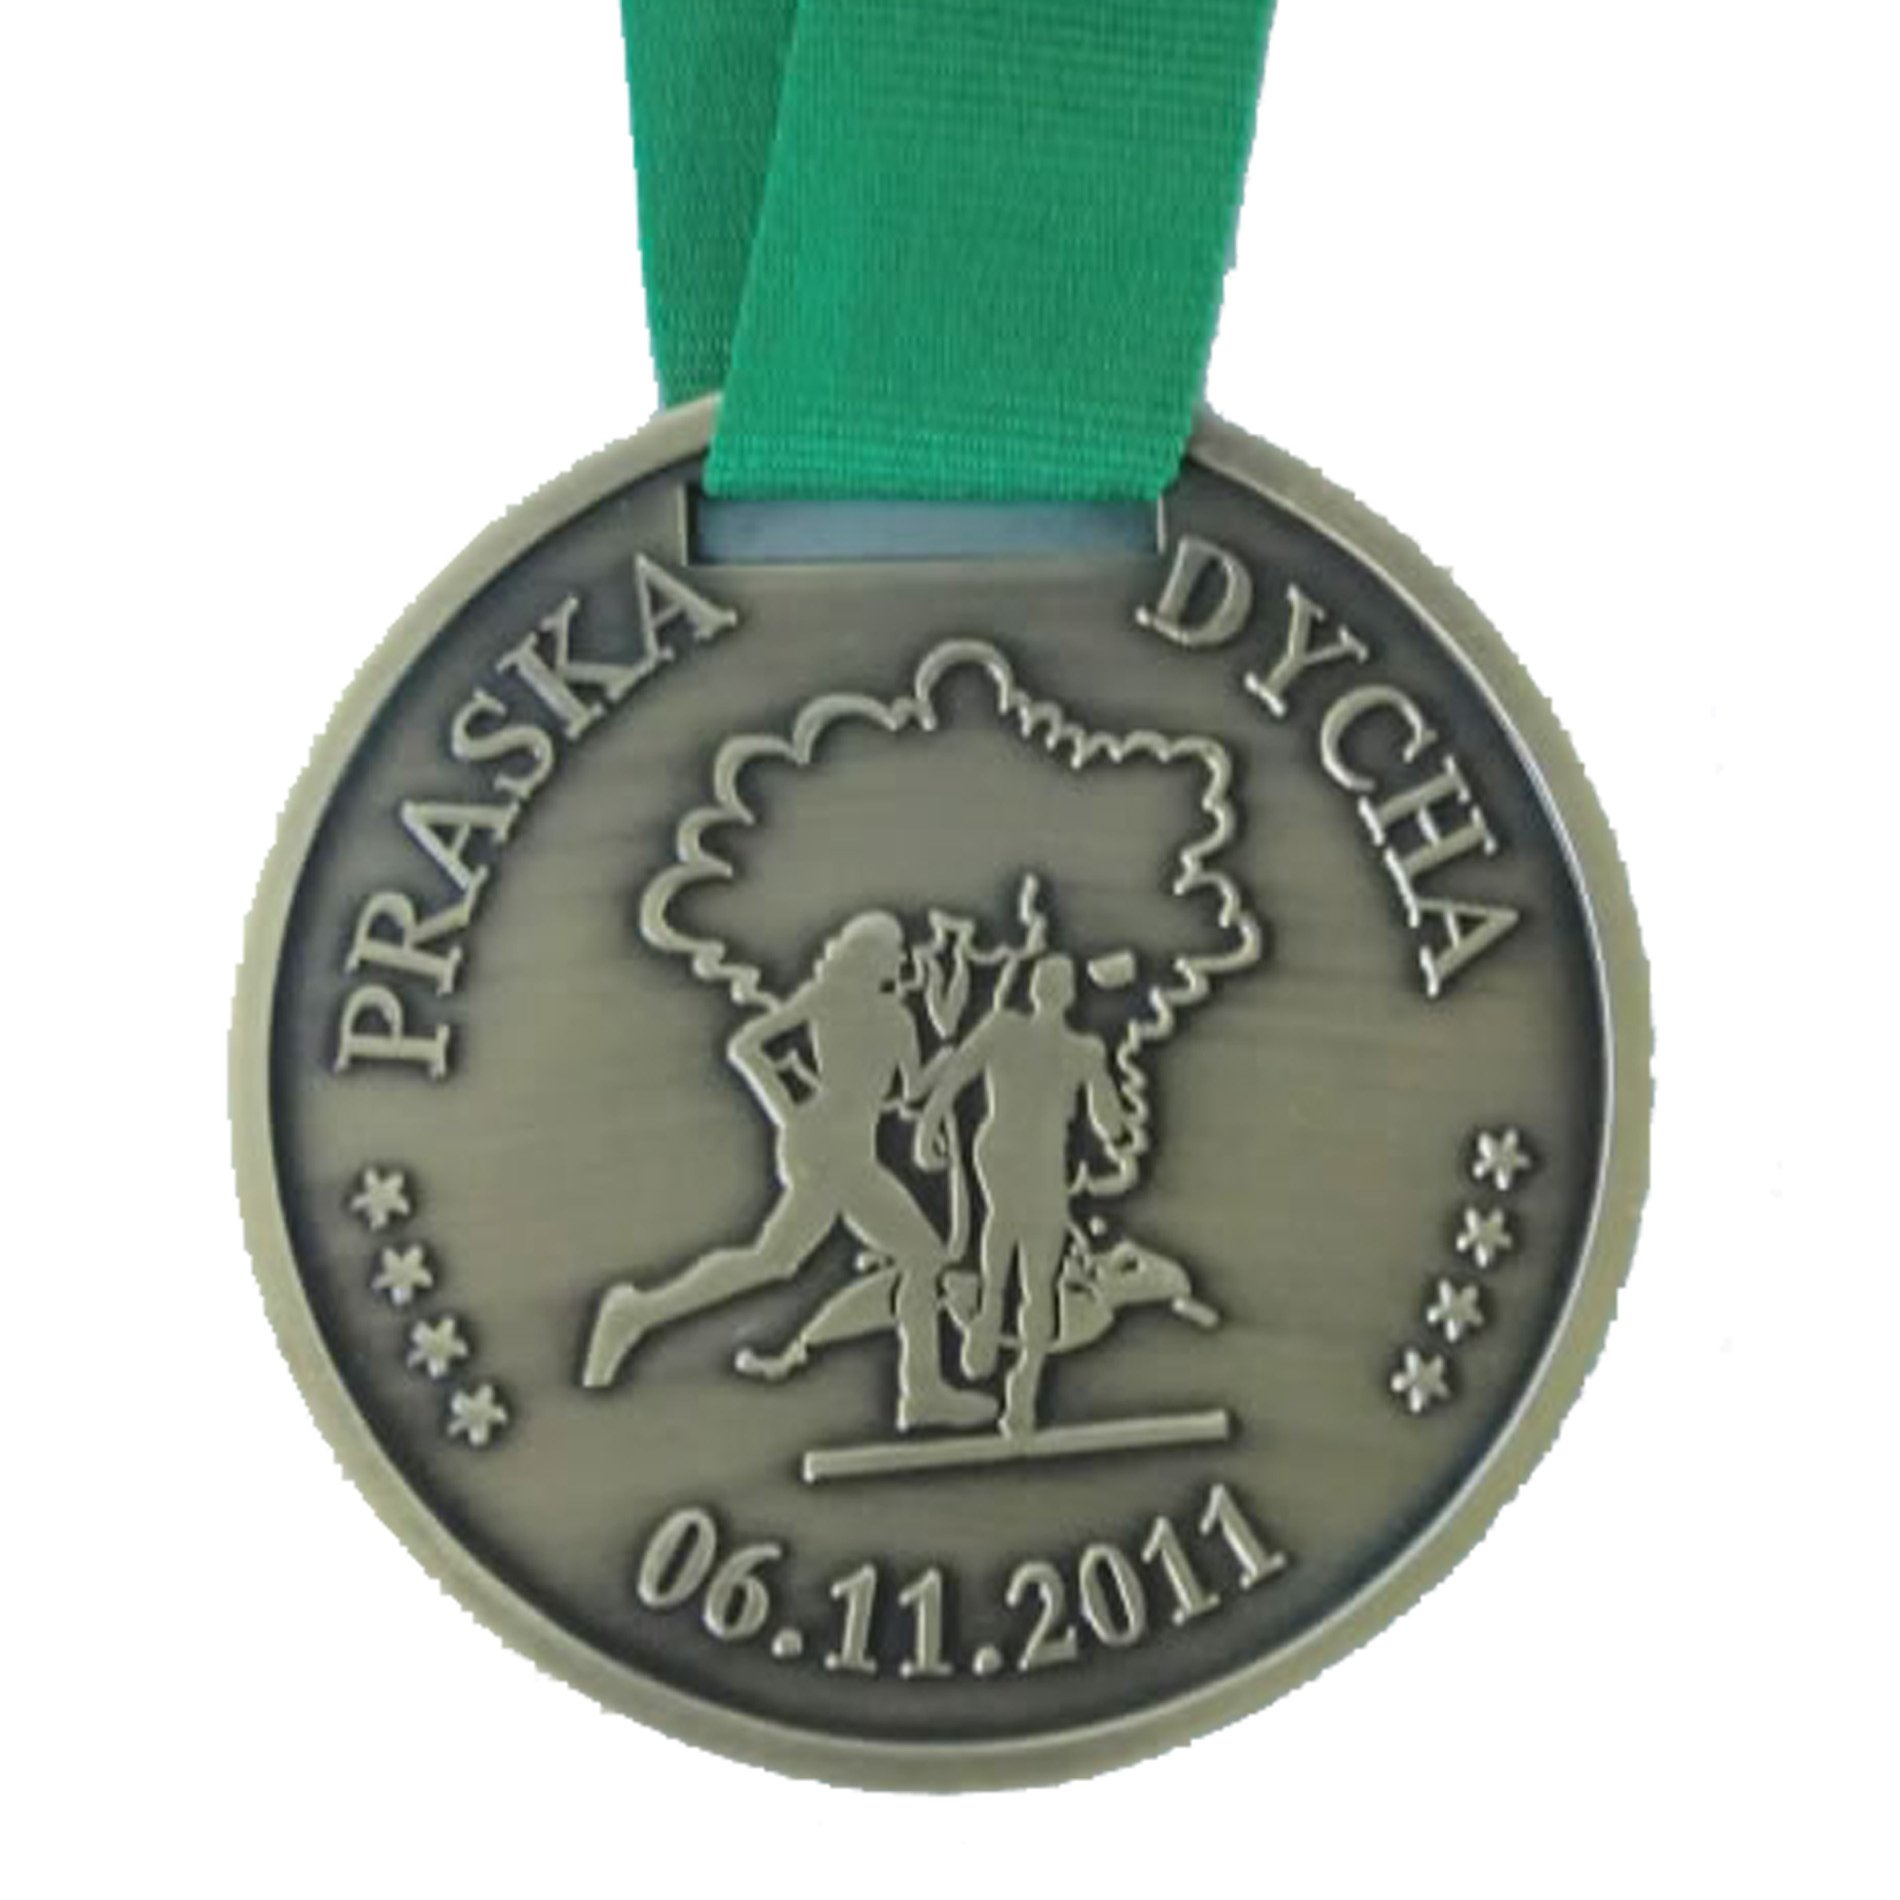 Custom Medal